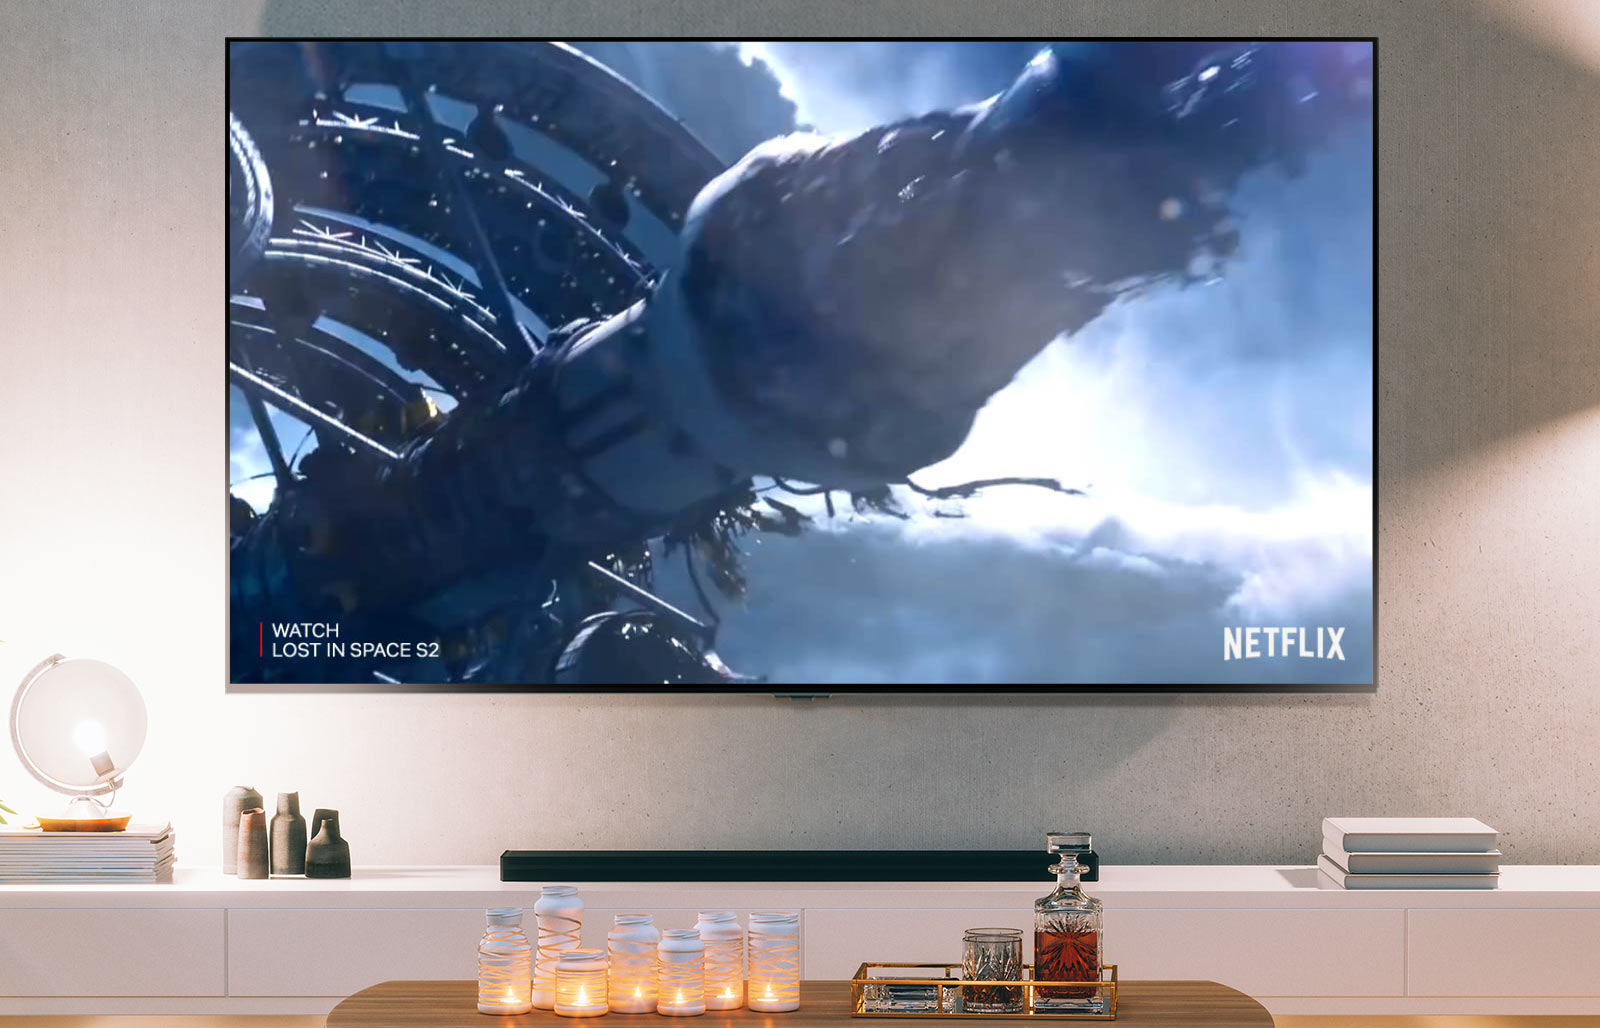 TV zaslon, ki prikazuje posnetek iz druge sezone serije Lost in Space na Netflixu (predvajajte video).